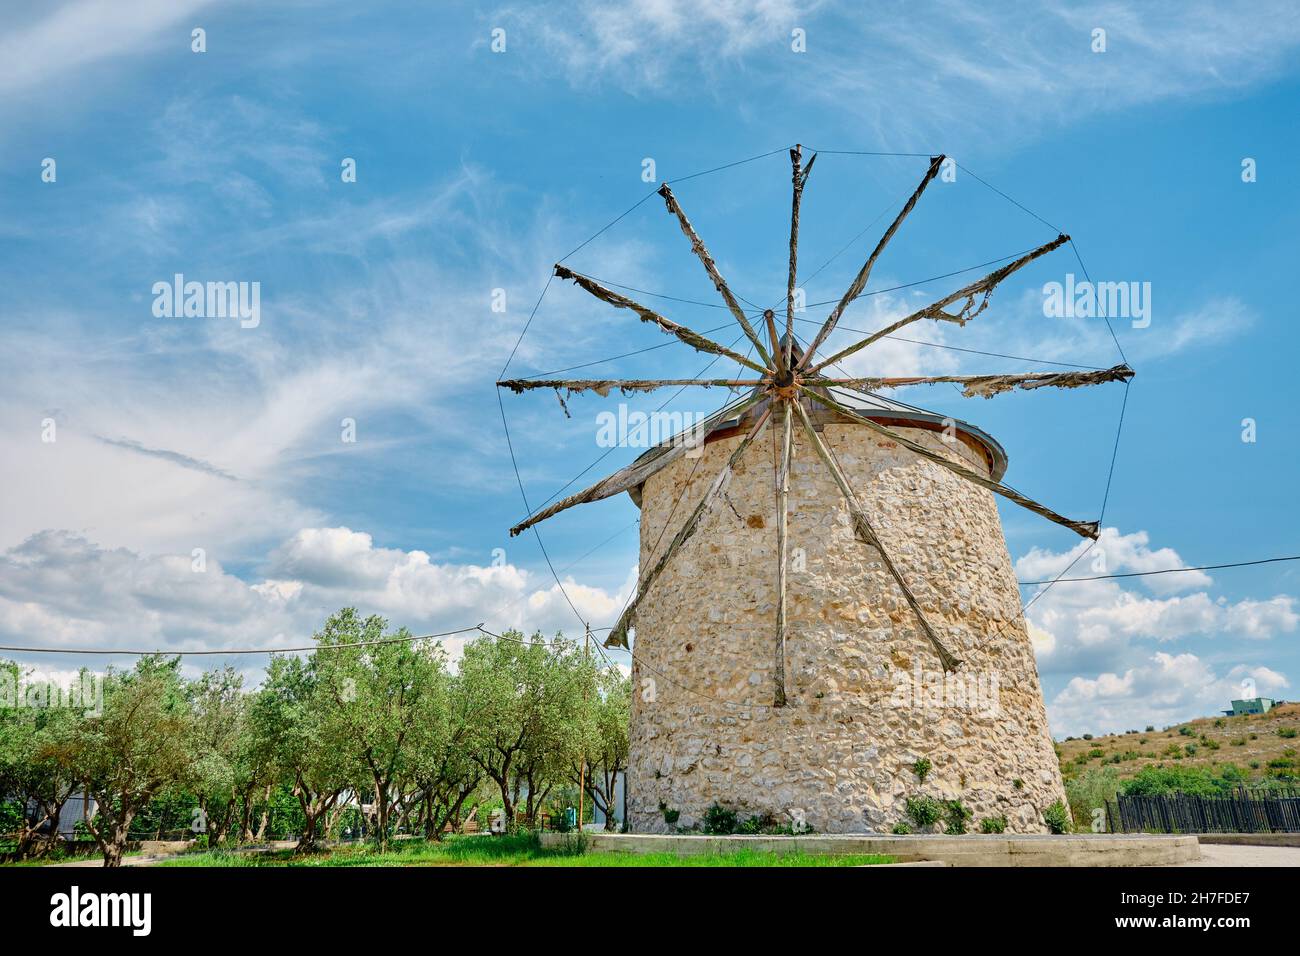 Alte Windmühle in Golyazi (uluabat) bursa und es Hauptstruktur aus Stein und mit hölzernen Propeller mit herrlichen blauen Himmel und grünen Baum Stockfoto